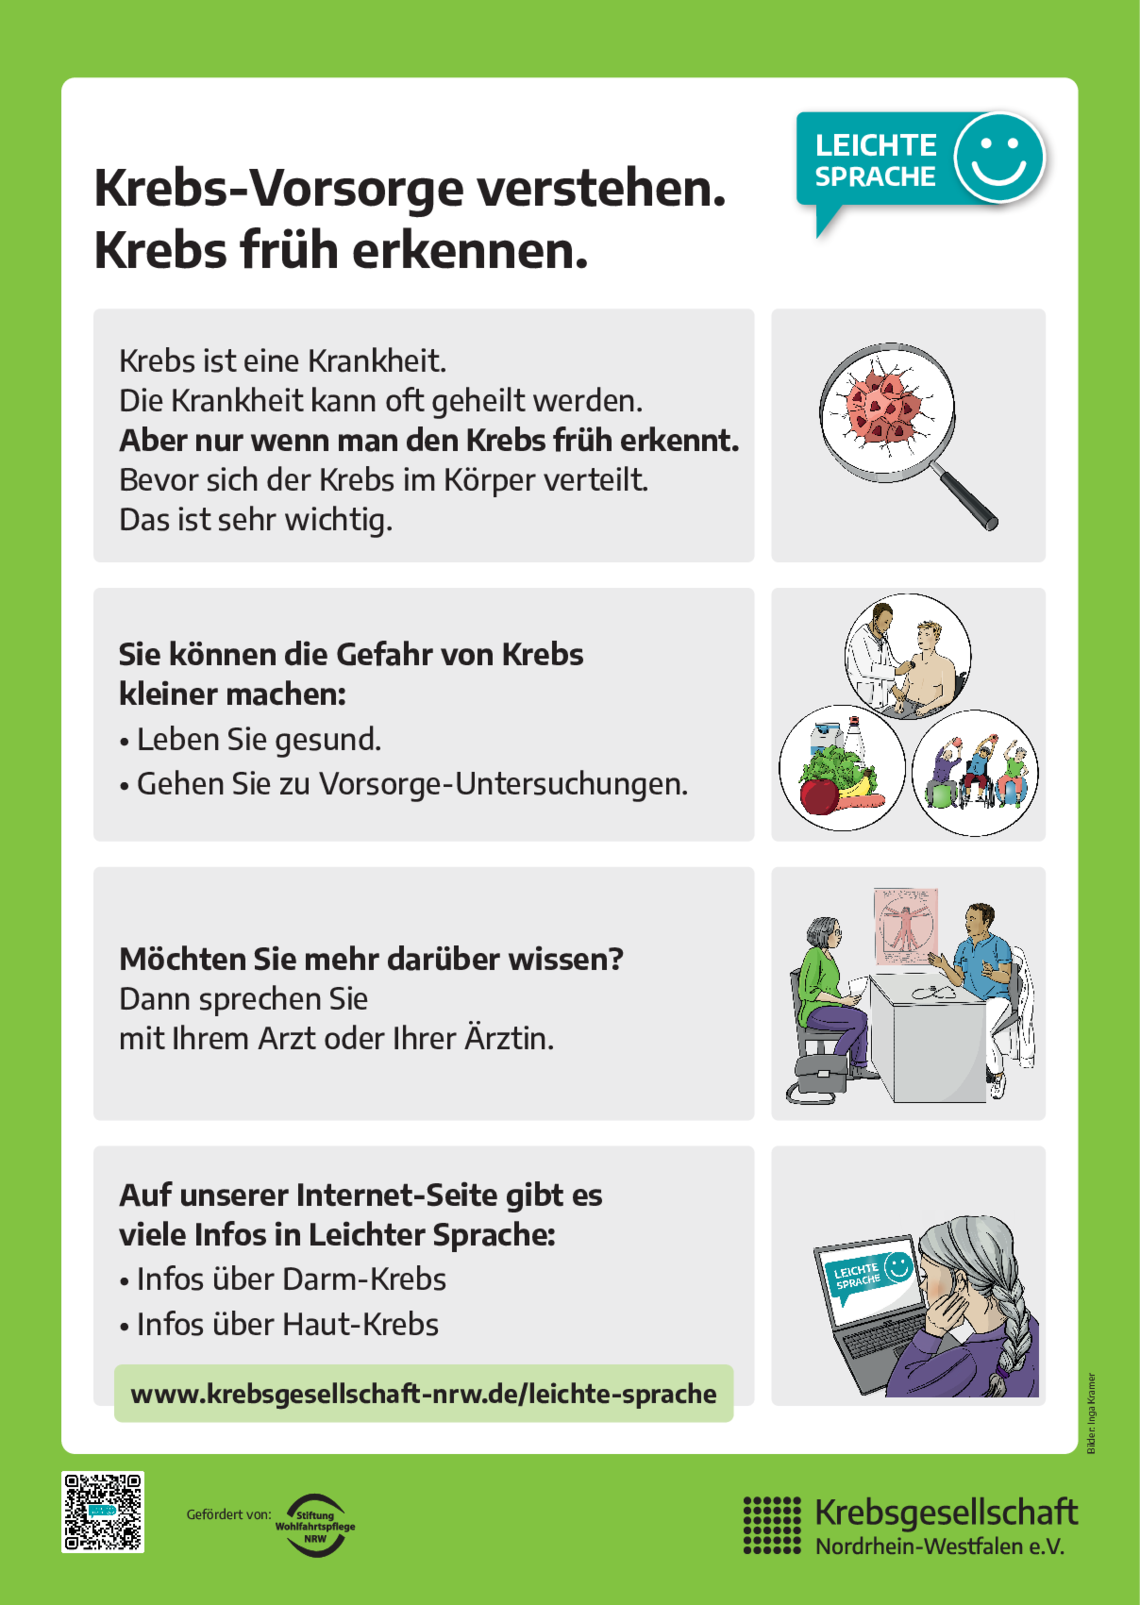 plakat-krebsvorsorge-leichte-sprache.PDF